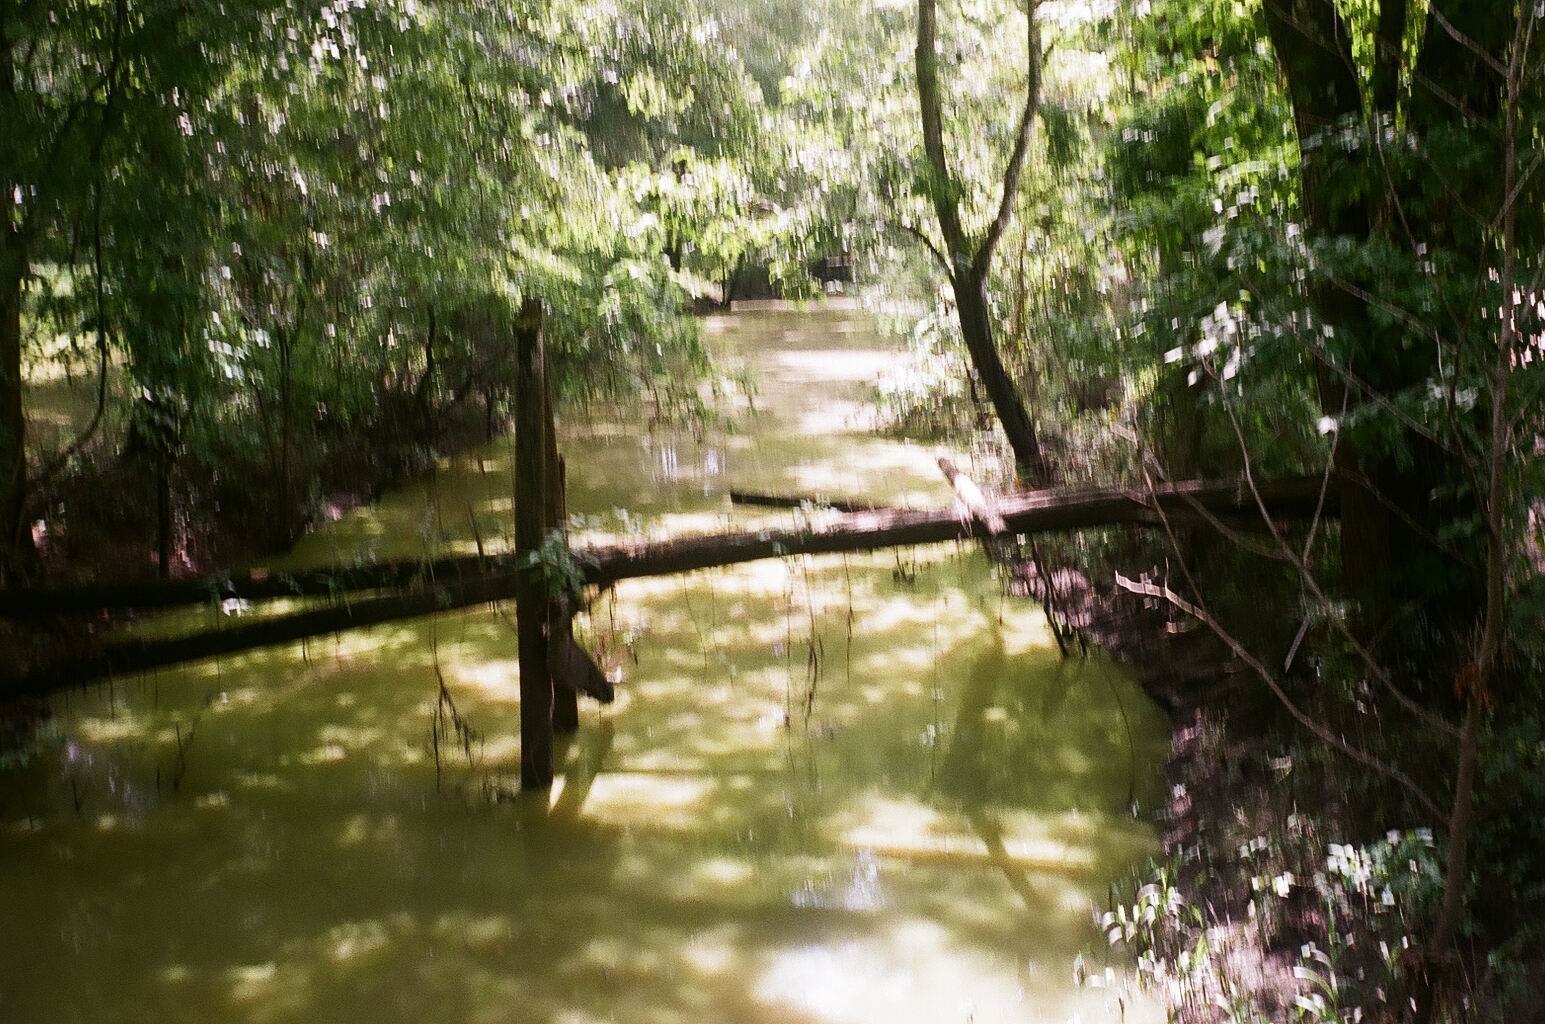 A log felled across the bayou